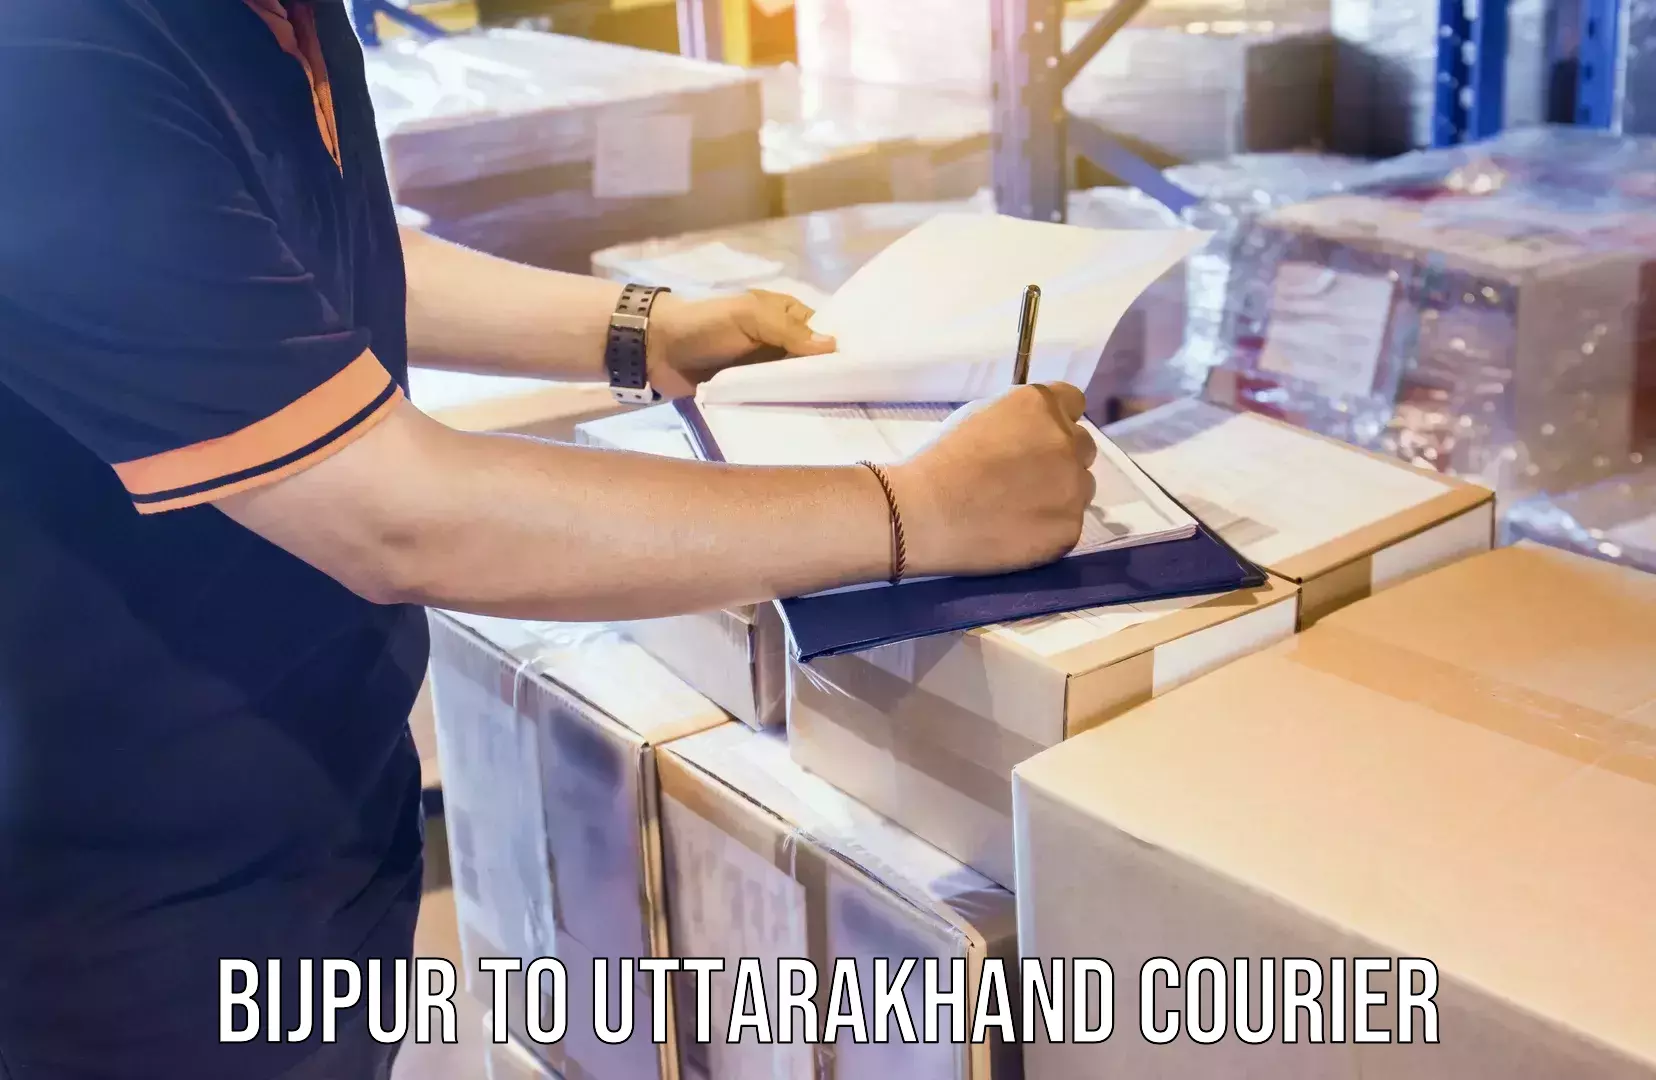 Premium courier services in Bijpur to Uttarakhand